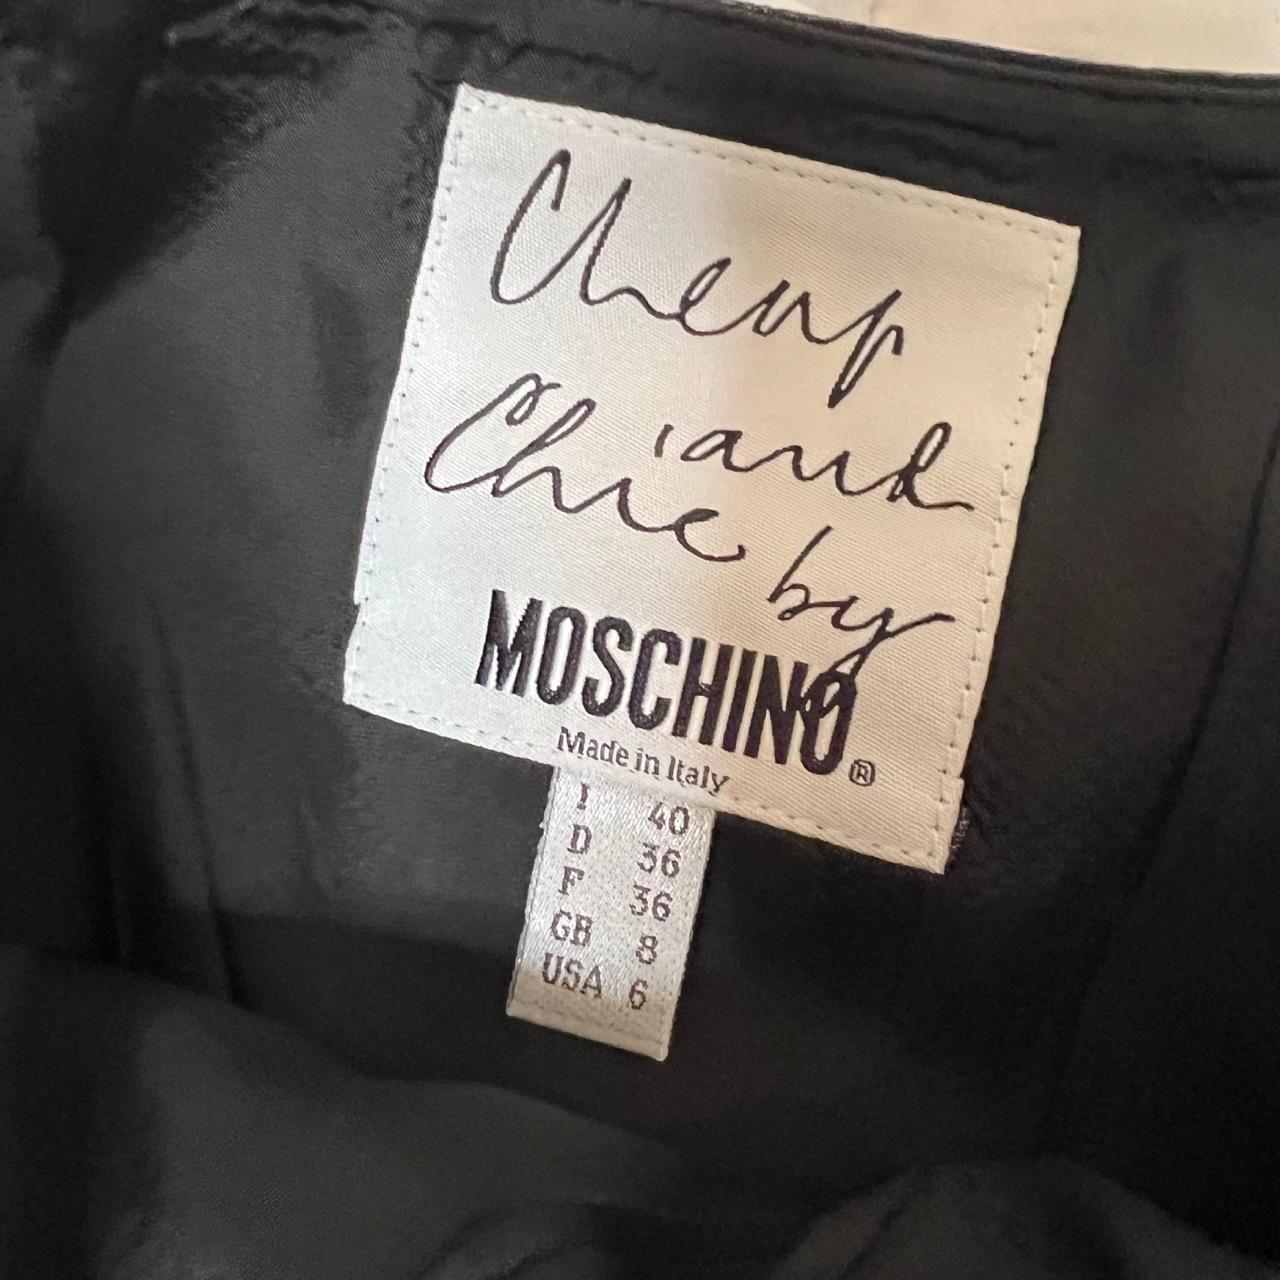 Moschino Cheap & Chic Women's Grey and Black Skirt (3)